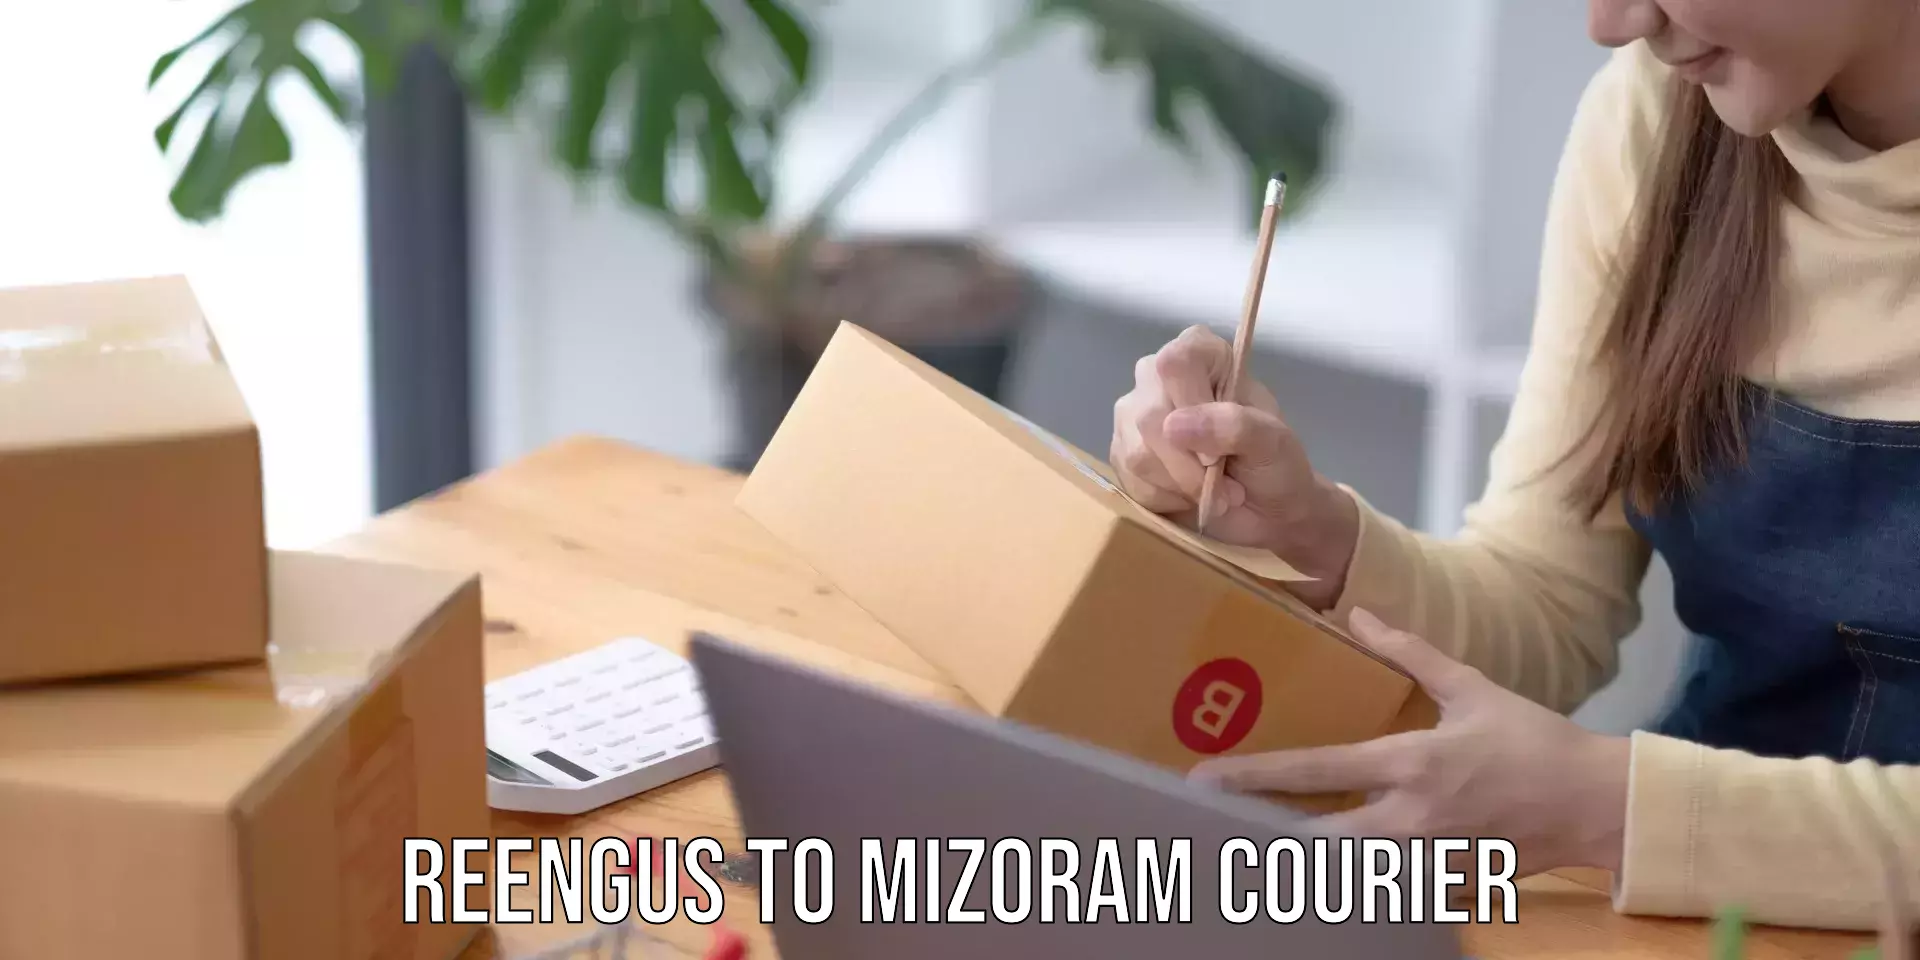 Courier service comparison Reengus to Mizoram